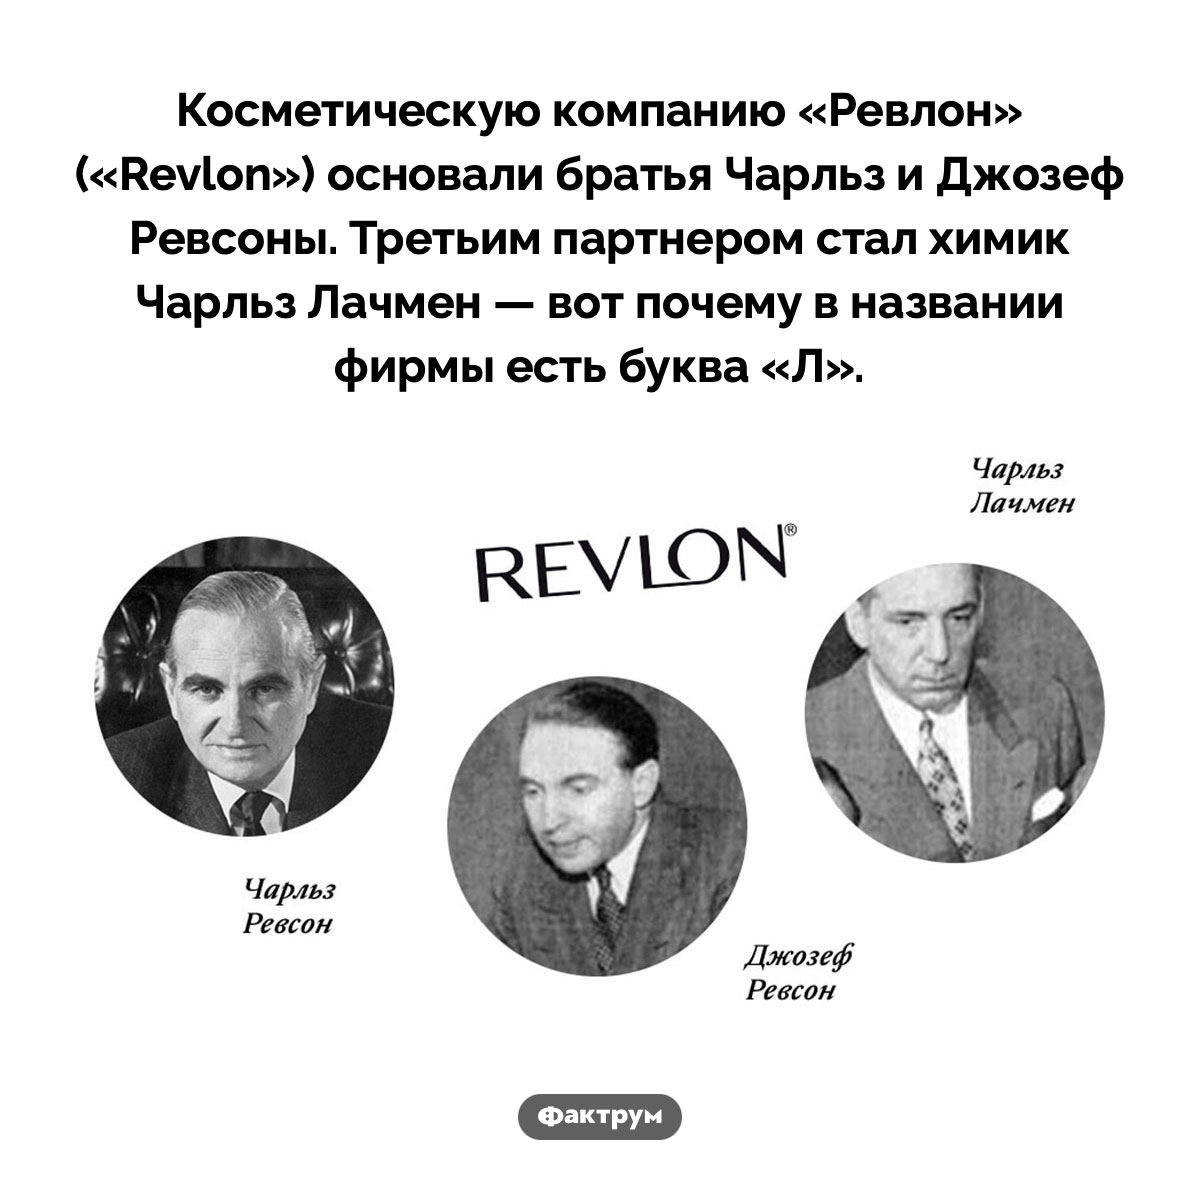 Почему Revlon так называется. Косметическую компанию «Ревлон» («Revlon») основали братья Чарльз и Джозеф Ревсоны. Третьим партнером стал химик Чарльз Лачмен — вот почему в названии фирмы есть буква «Л».